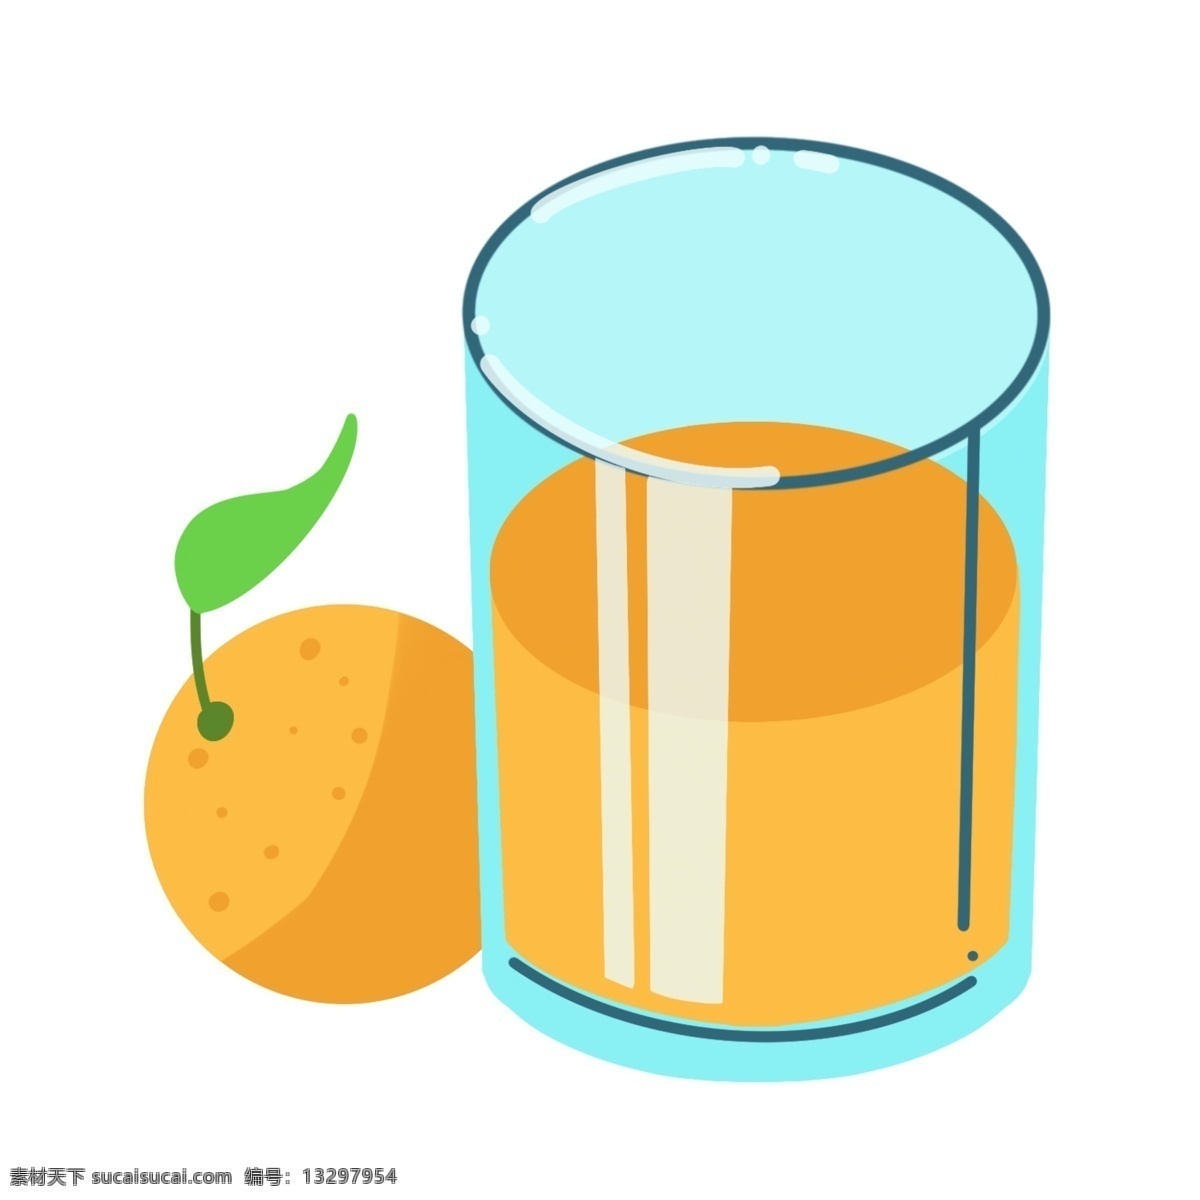 夏季饮品橙汁 果汁饮料 橙汁 夏季饮品